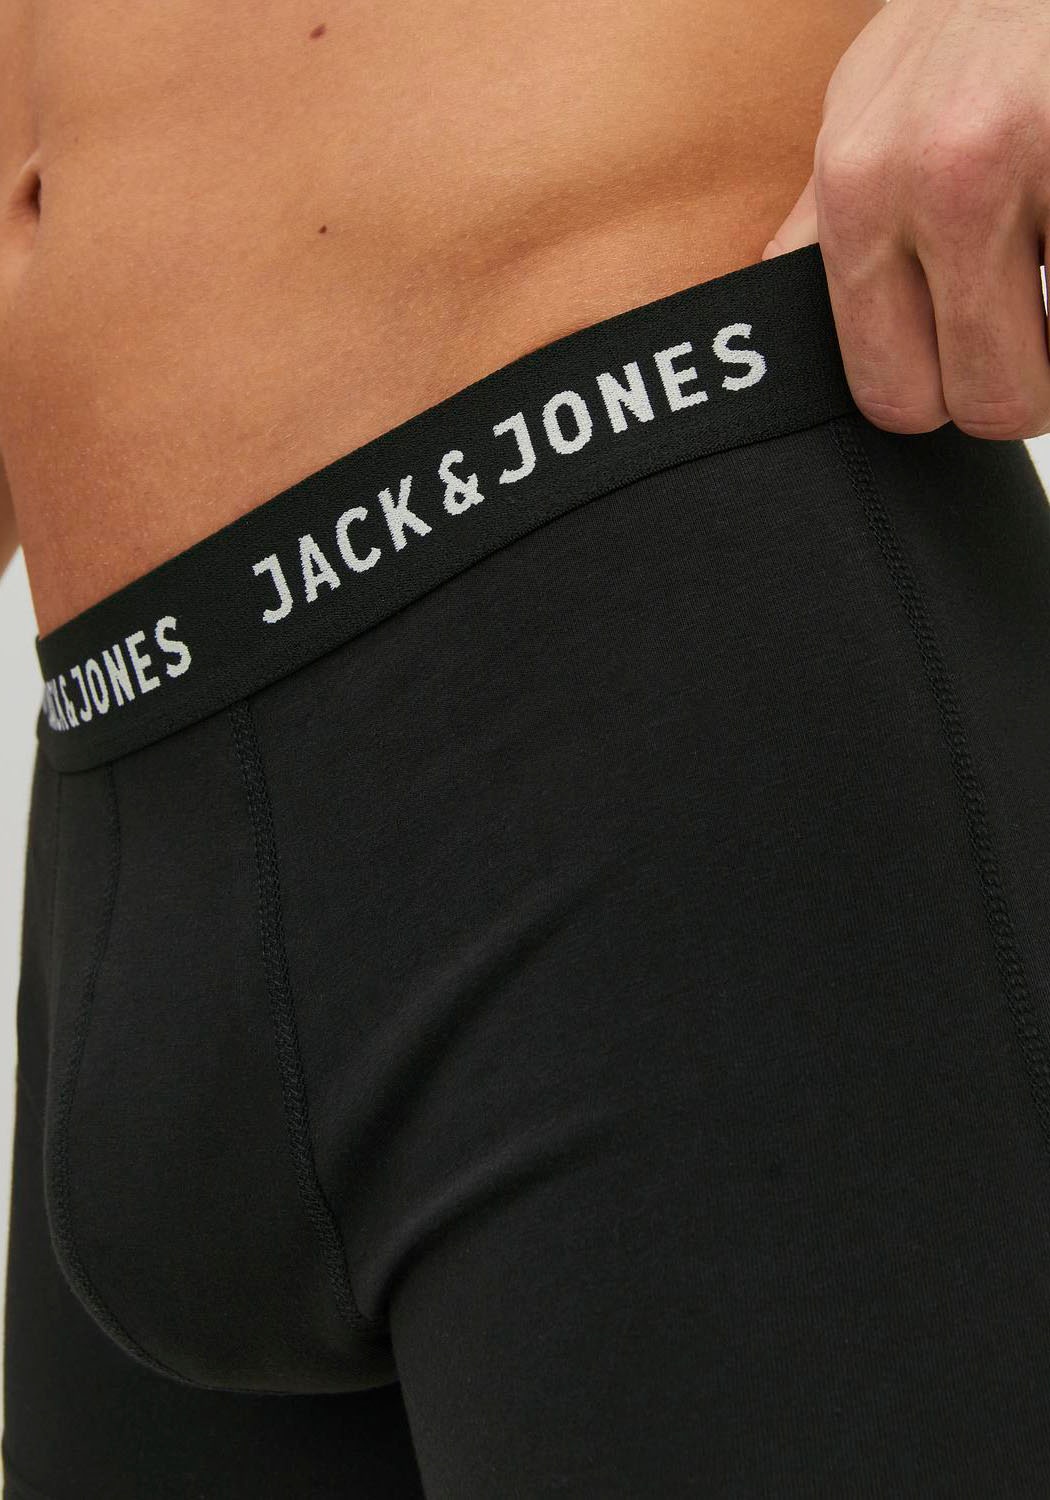 Jack & Jones Trunk »JACJON TRUNKS 2 PACK NOOS«, (Packung, 2 St., 2er-Pack)